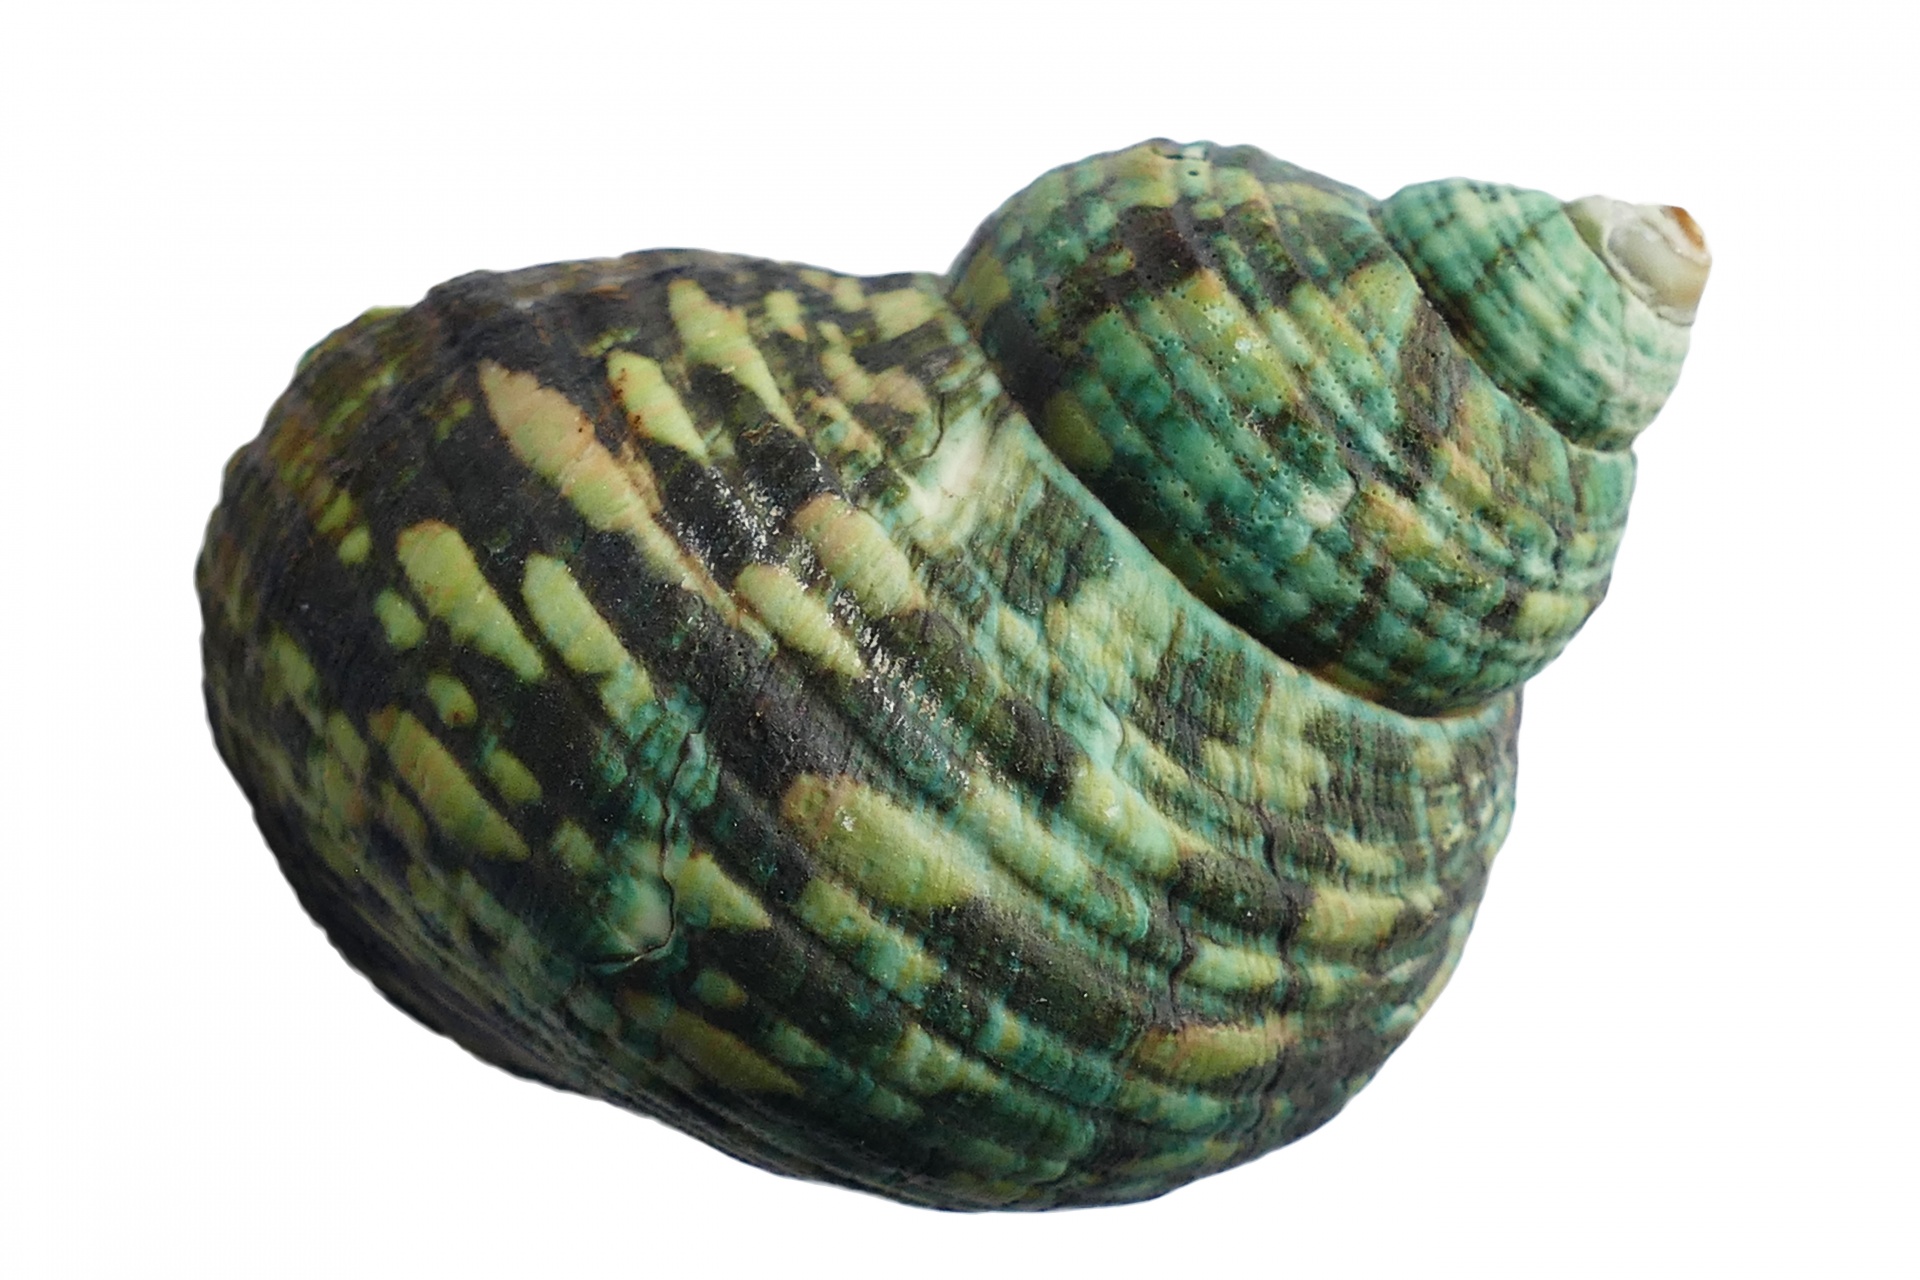 A pretty green sea shell.